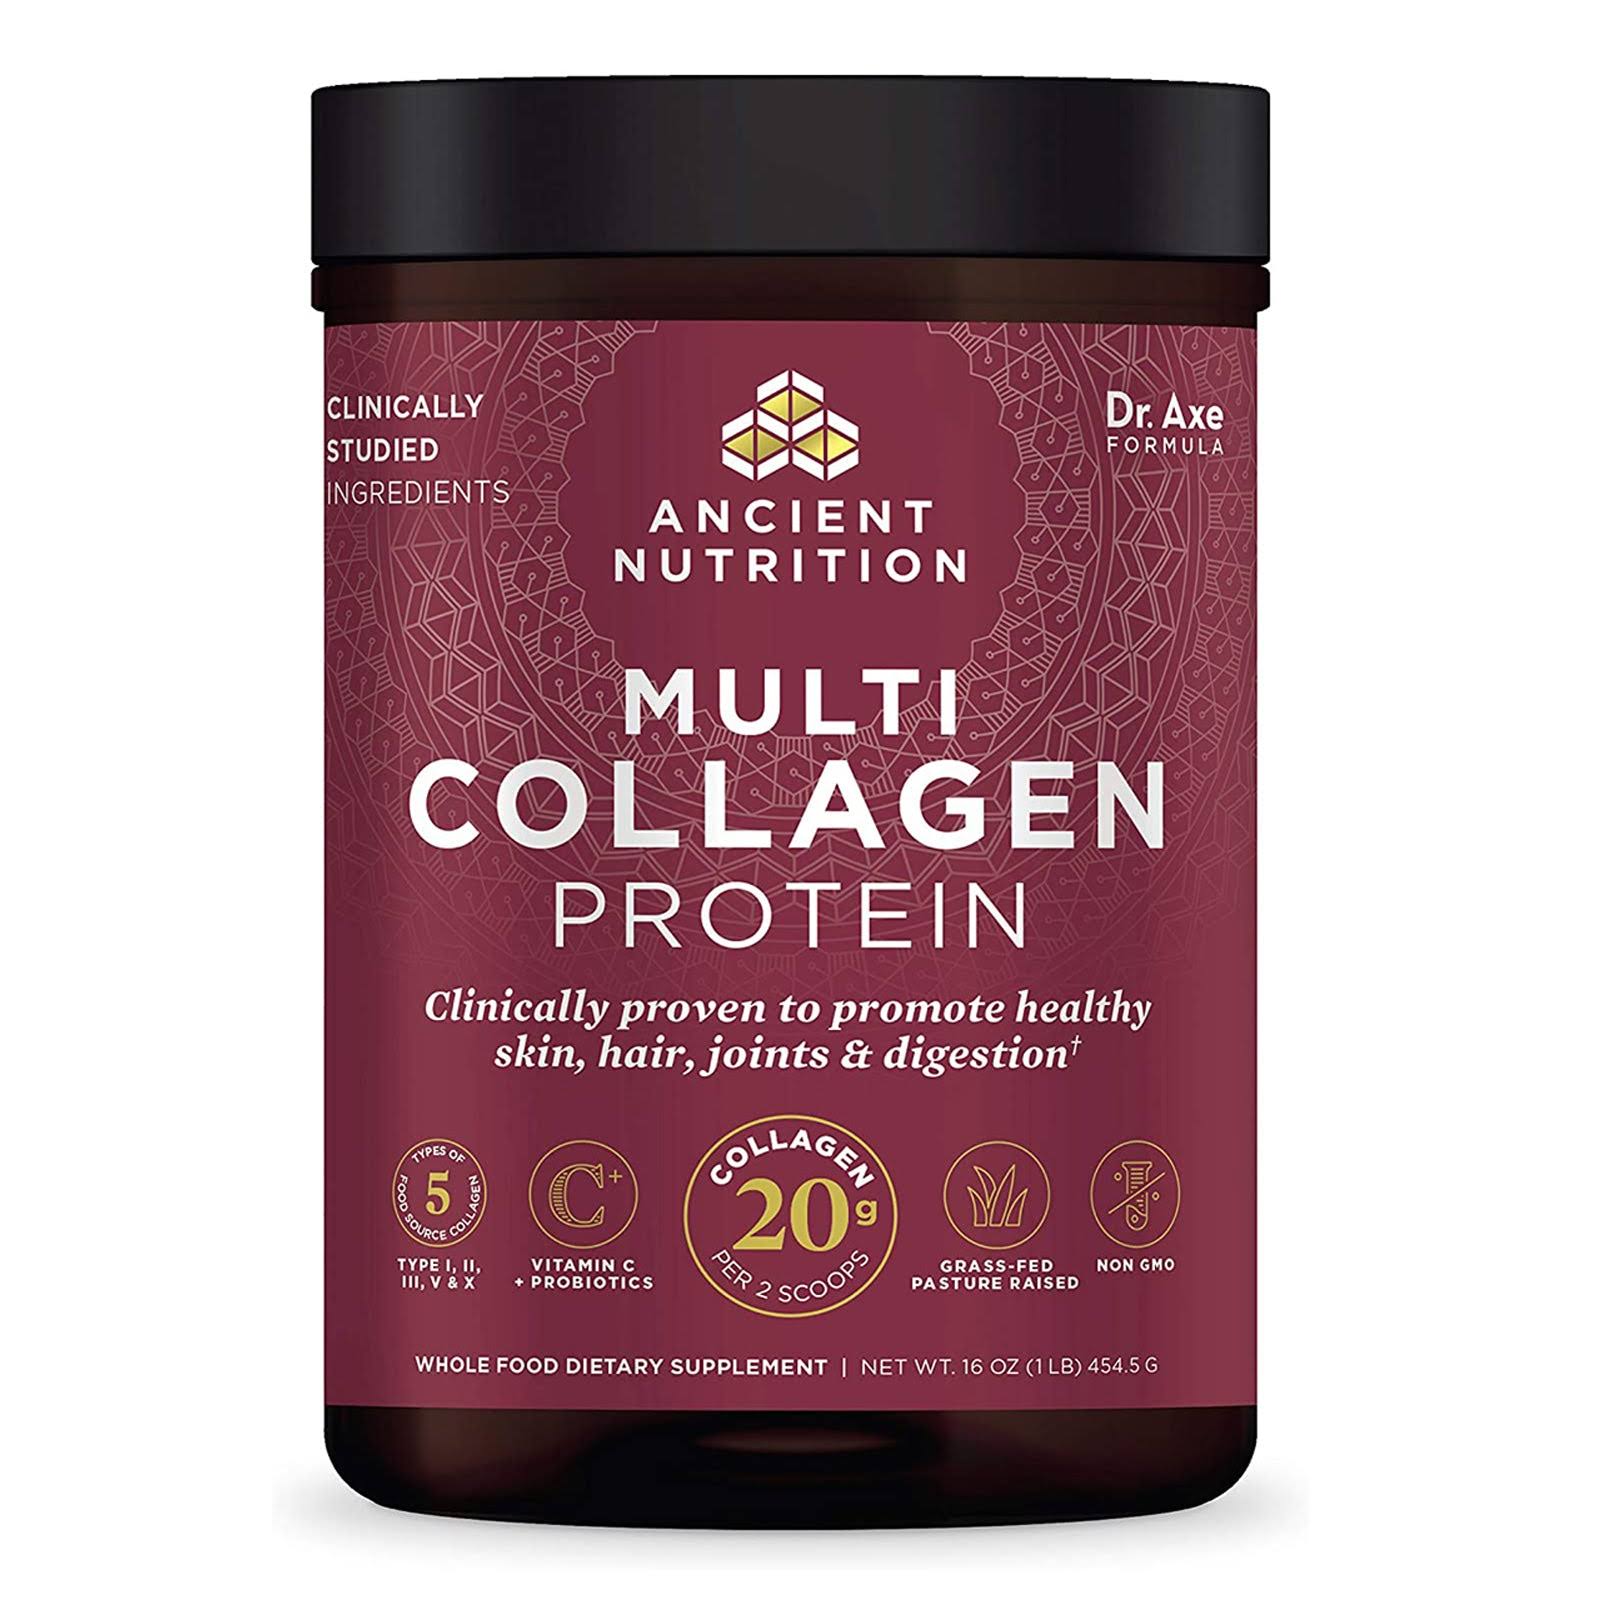 Dr. Collagen Multi Collagen Protein Powder Dietary Supplement - 1lb